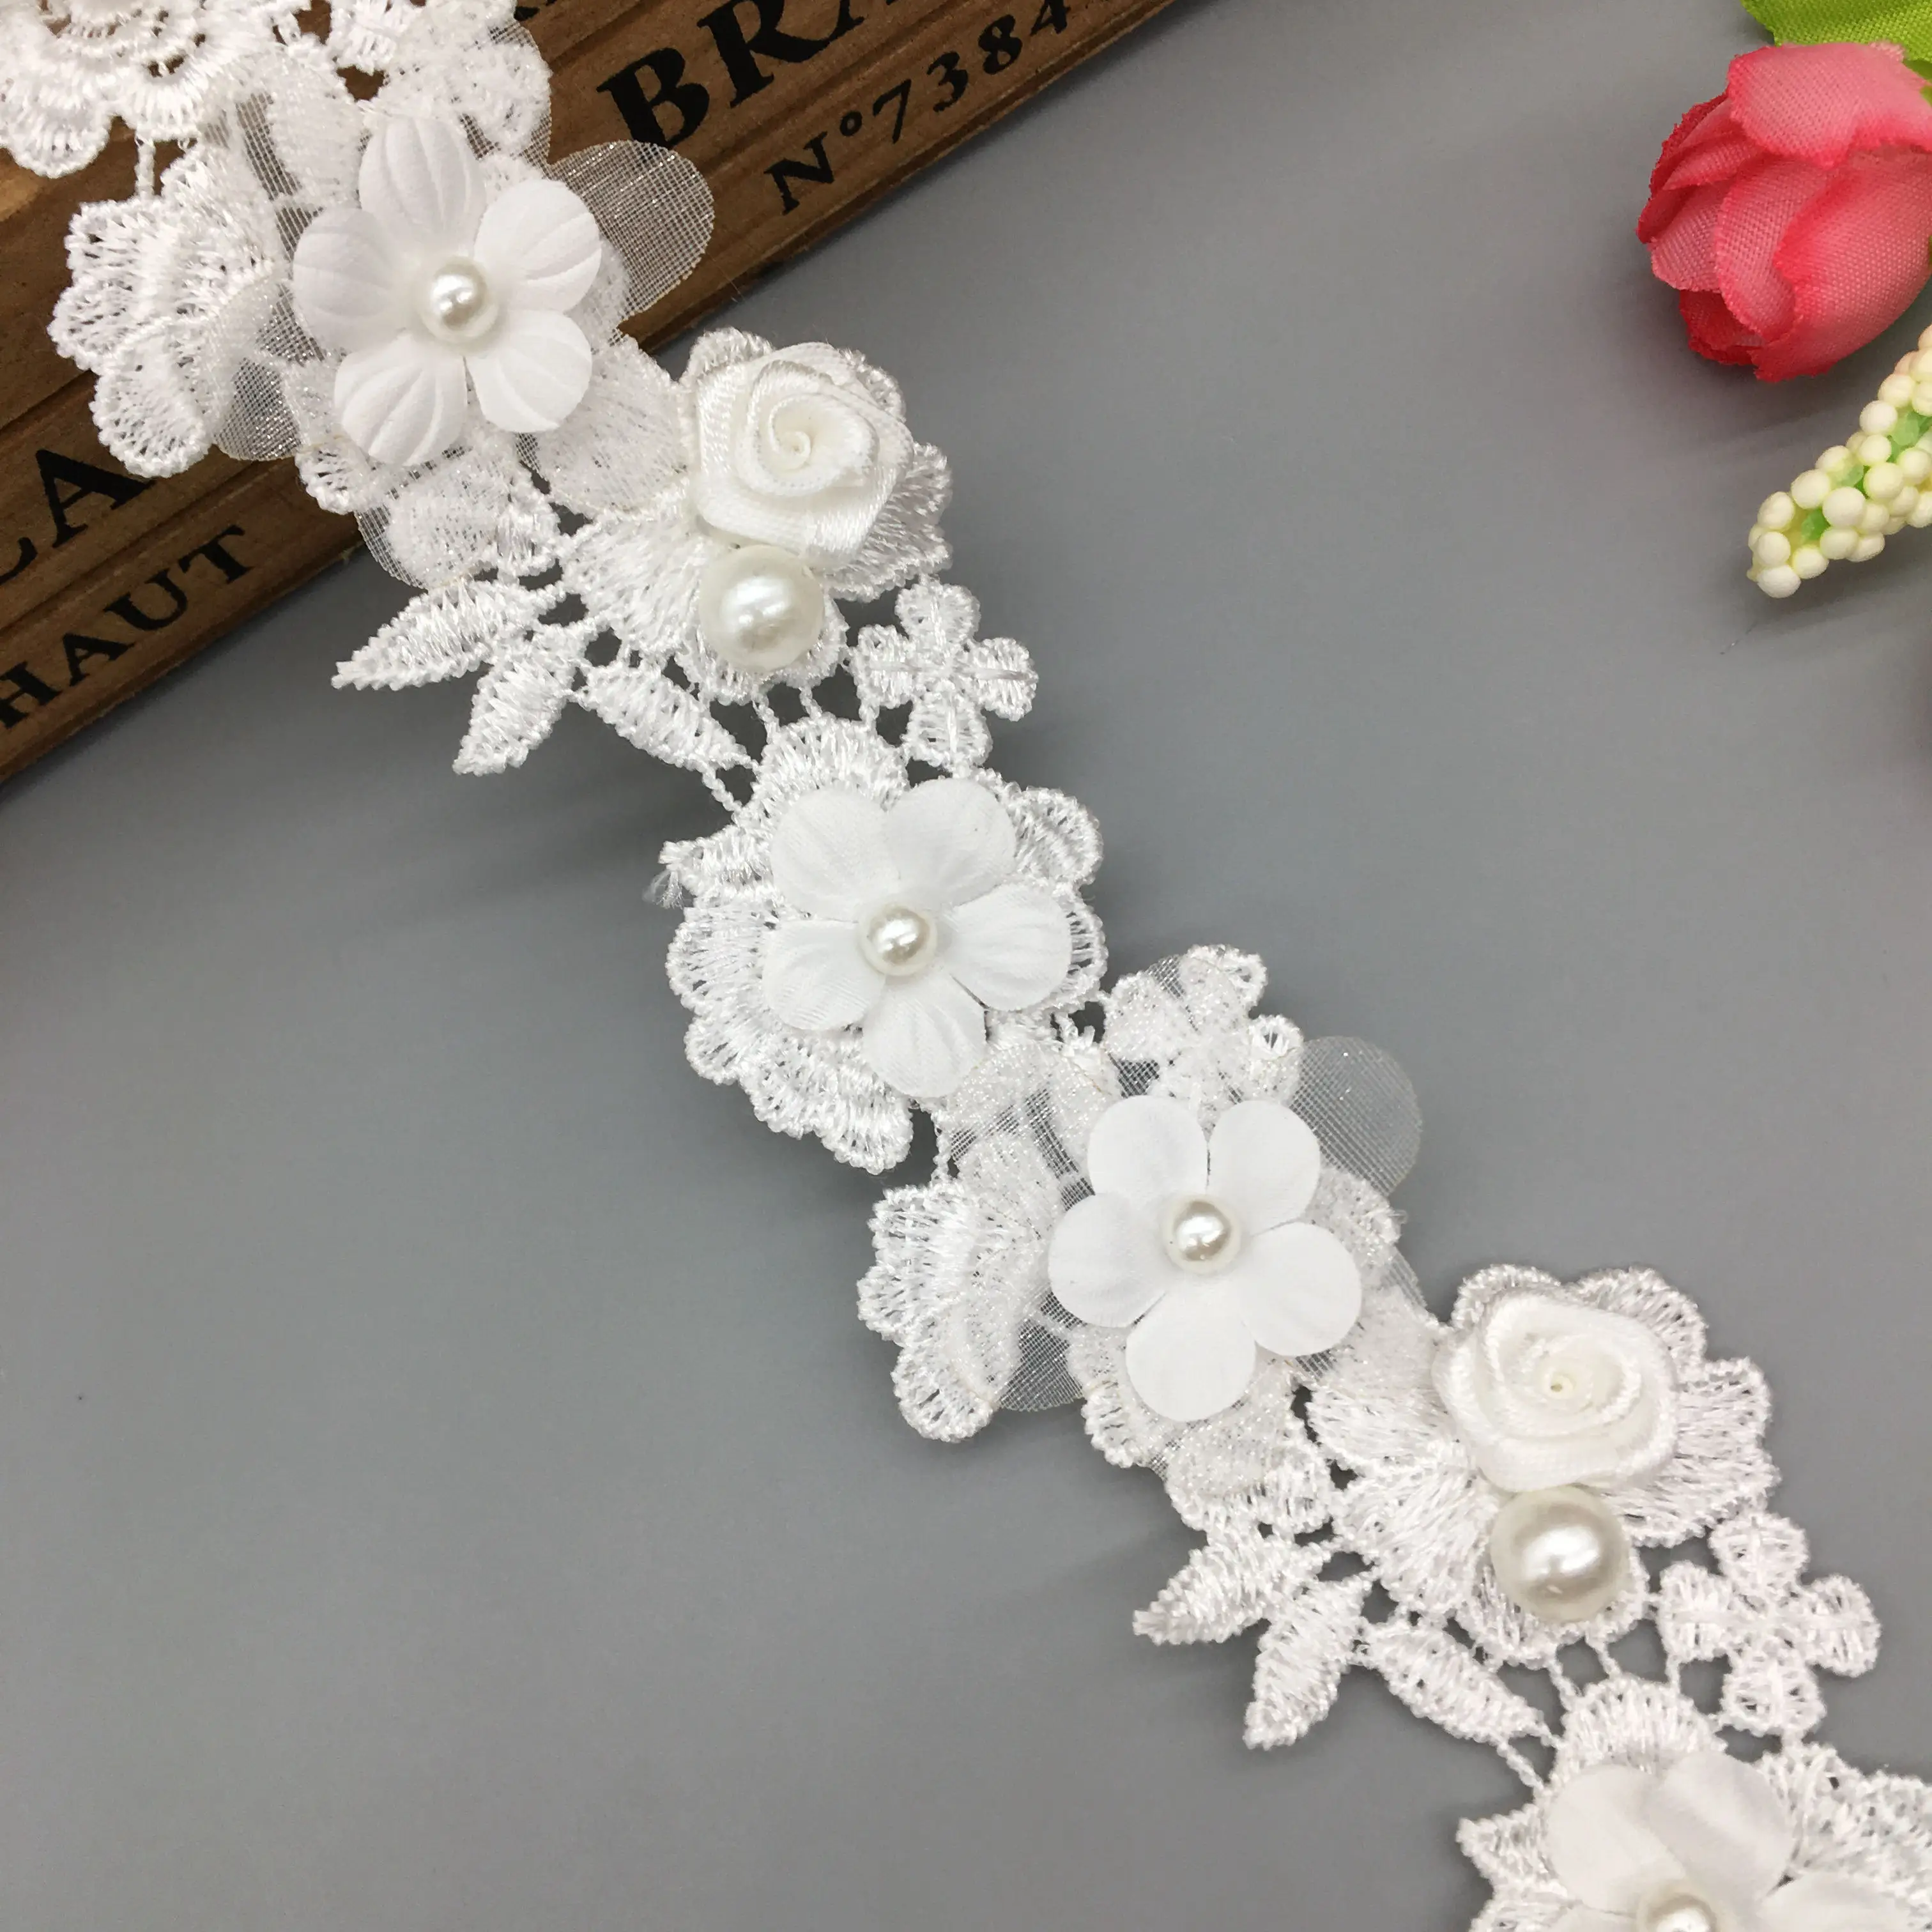 YFB Flor de Perla Blanca con Cuentas Bordadas a Mano de Encaje Bordado Borde de la Cinta de Doble Capa de Encaje Apliques para Vestido de Novia   32pcs 